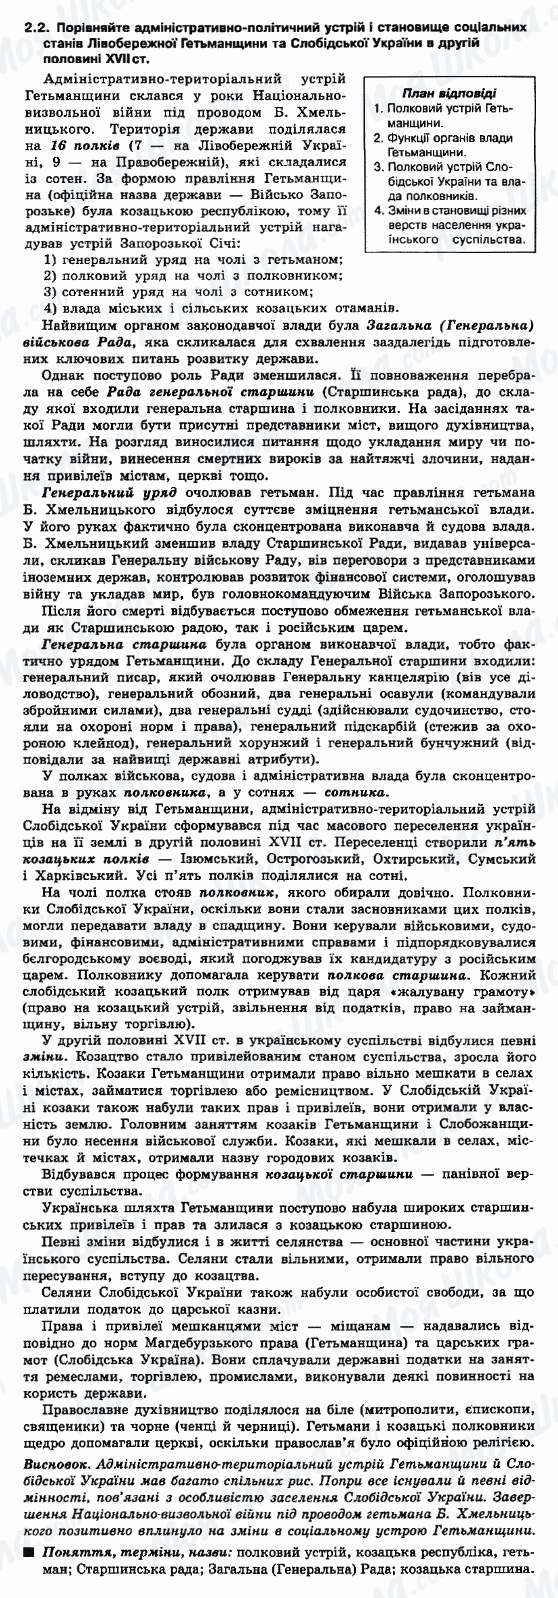 ДПА Історія України 9 клас сторінка 2.2